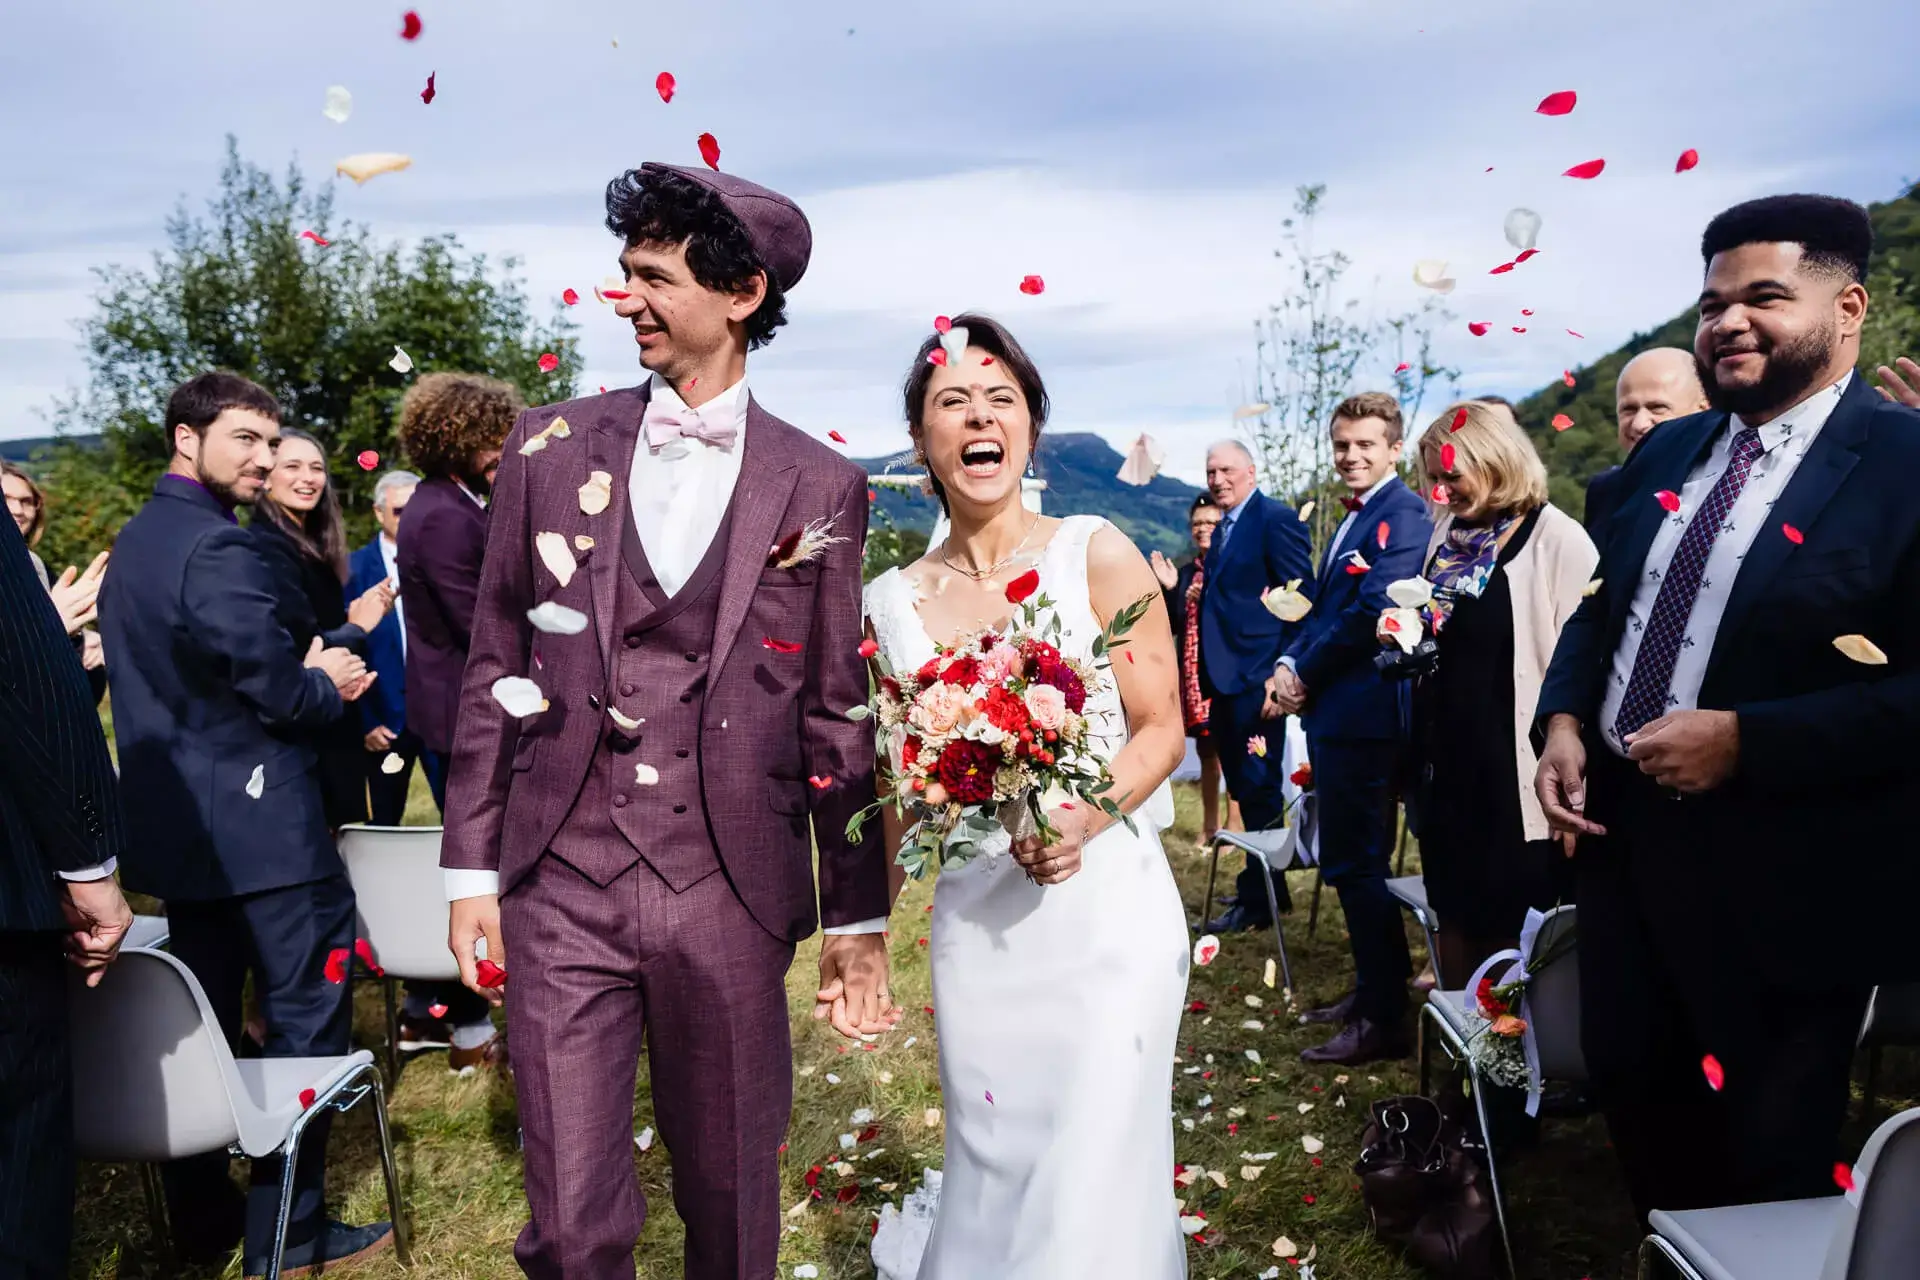 La marié avec son bouquet de fleurs, aux coté de son mari, au milieu des pétales lancés par les invités.